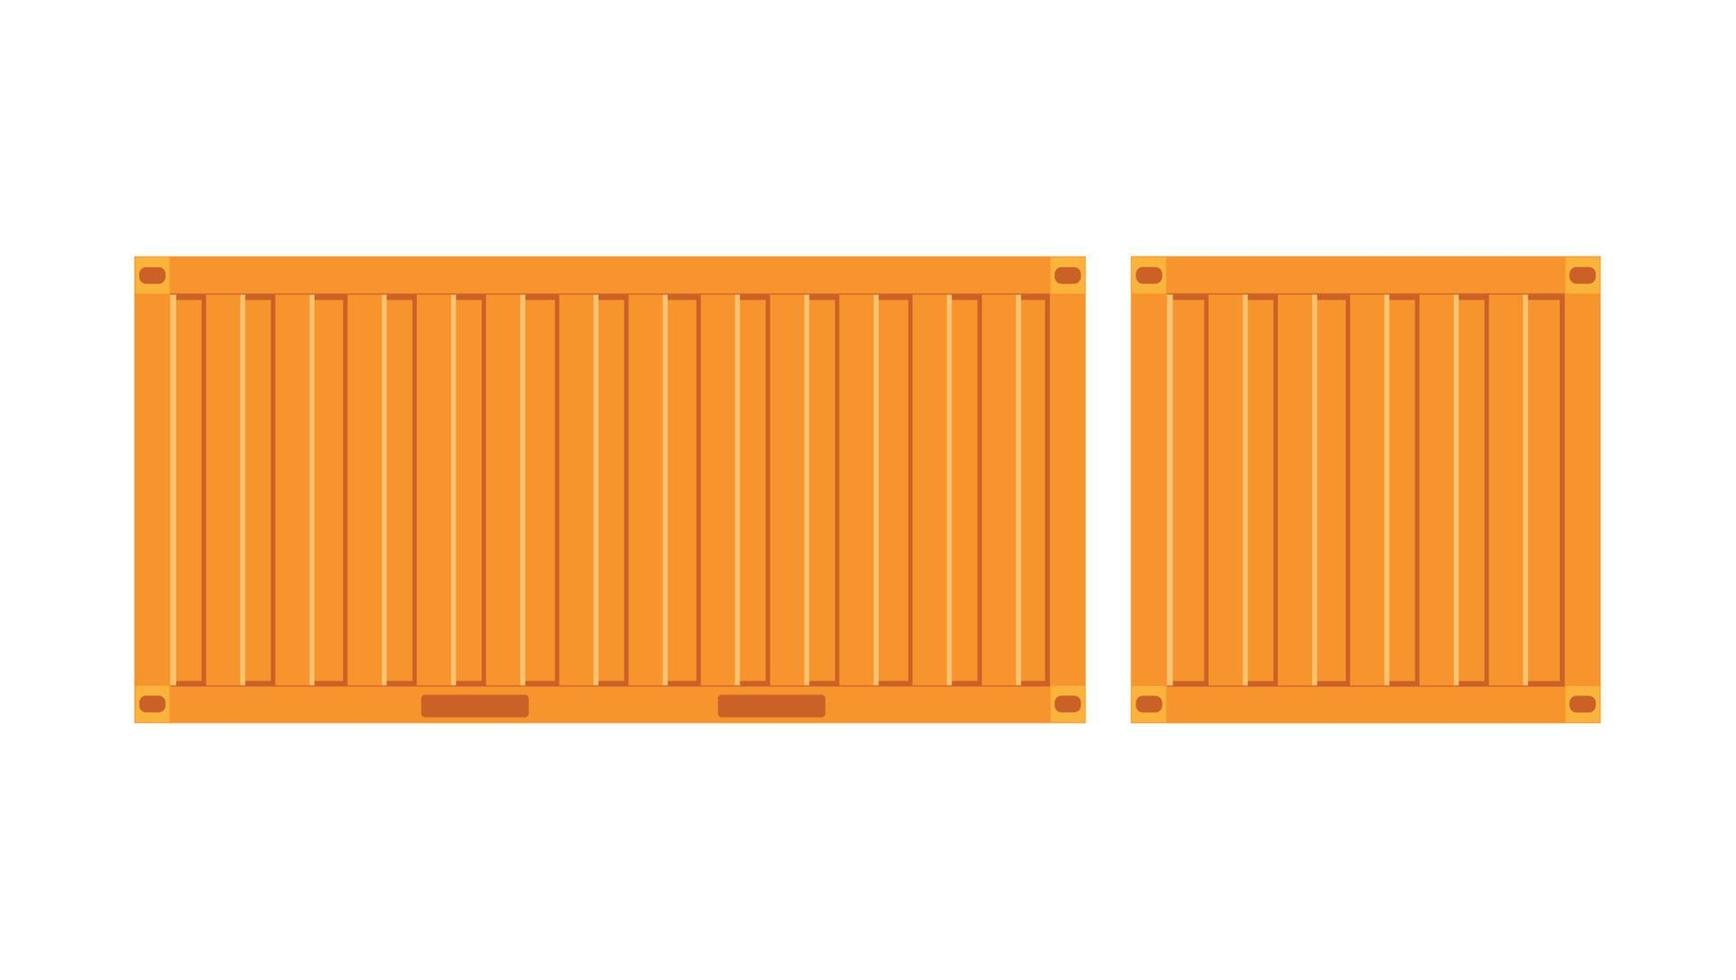 gele vrachtcontainer.grote container voor schip geïsoleerd op een witte achtergrond. vector. vector